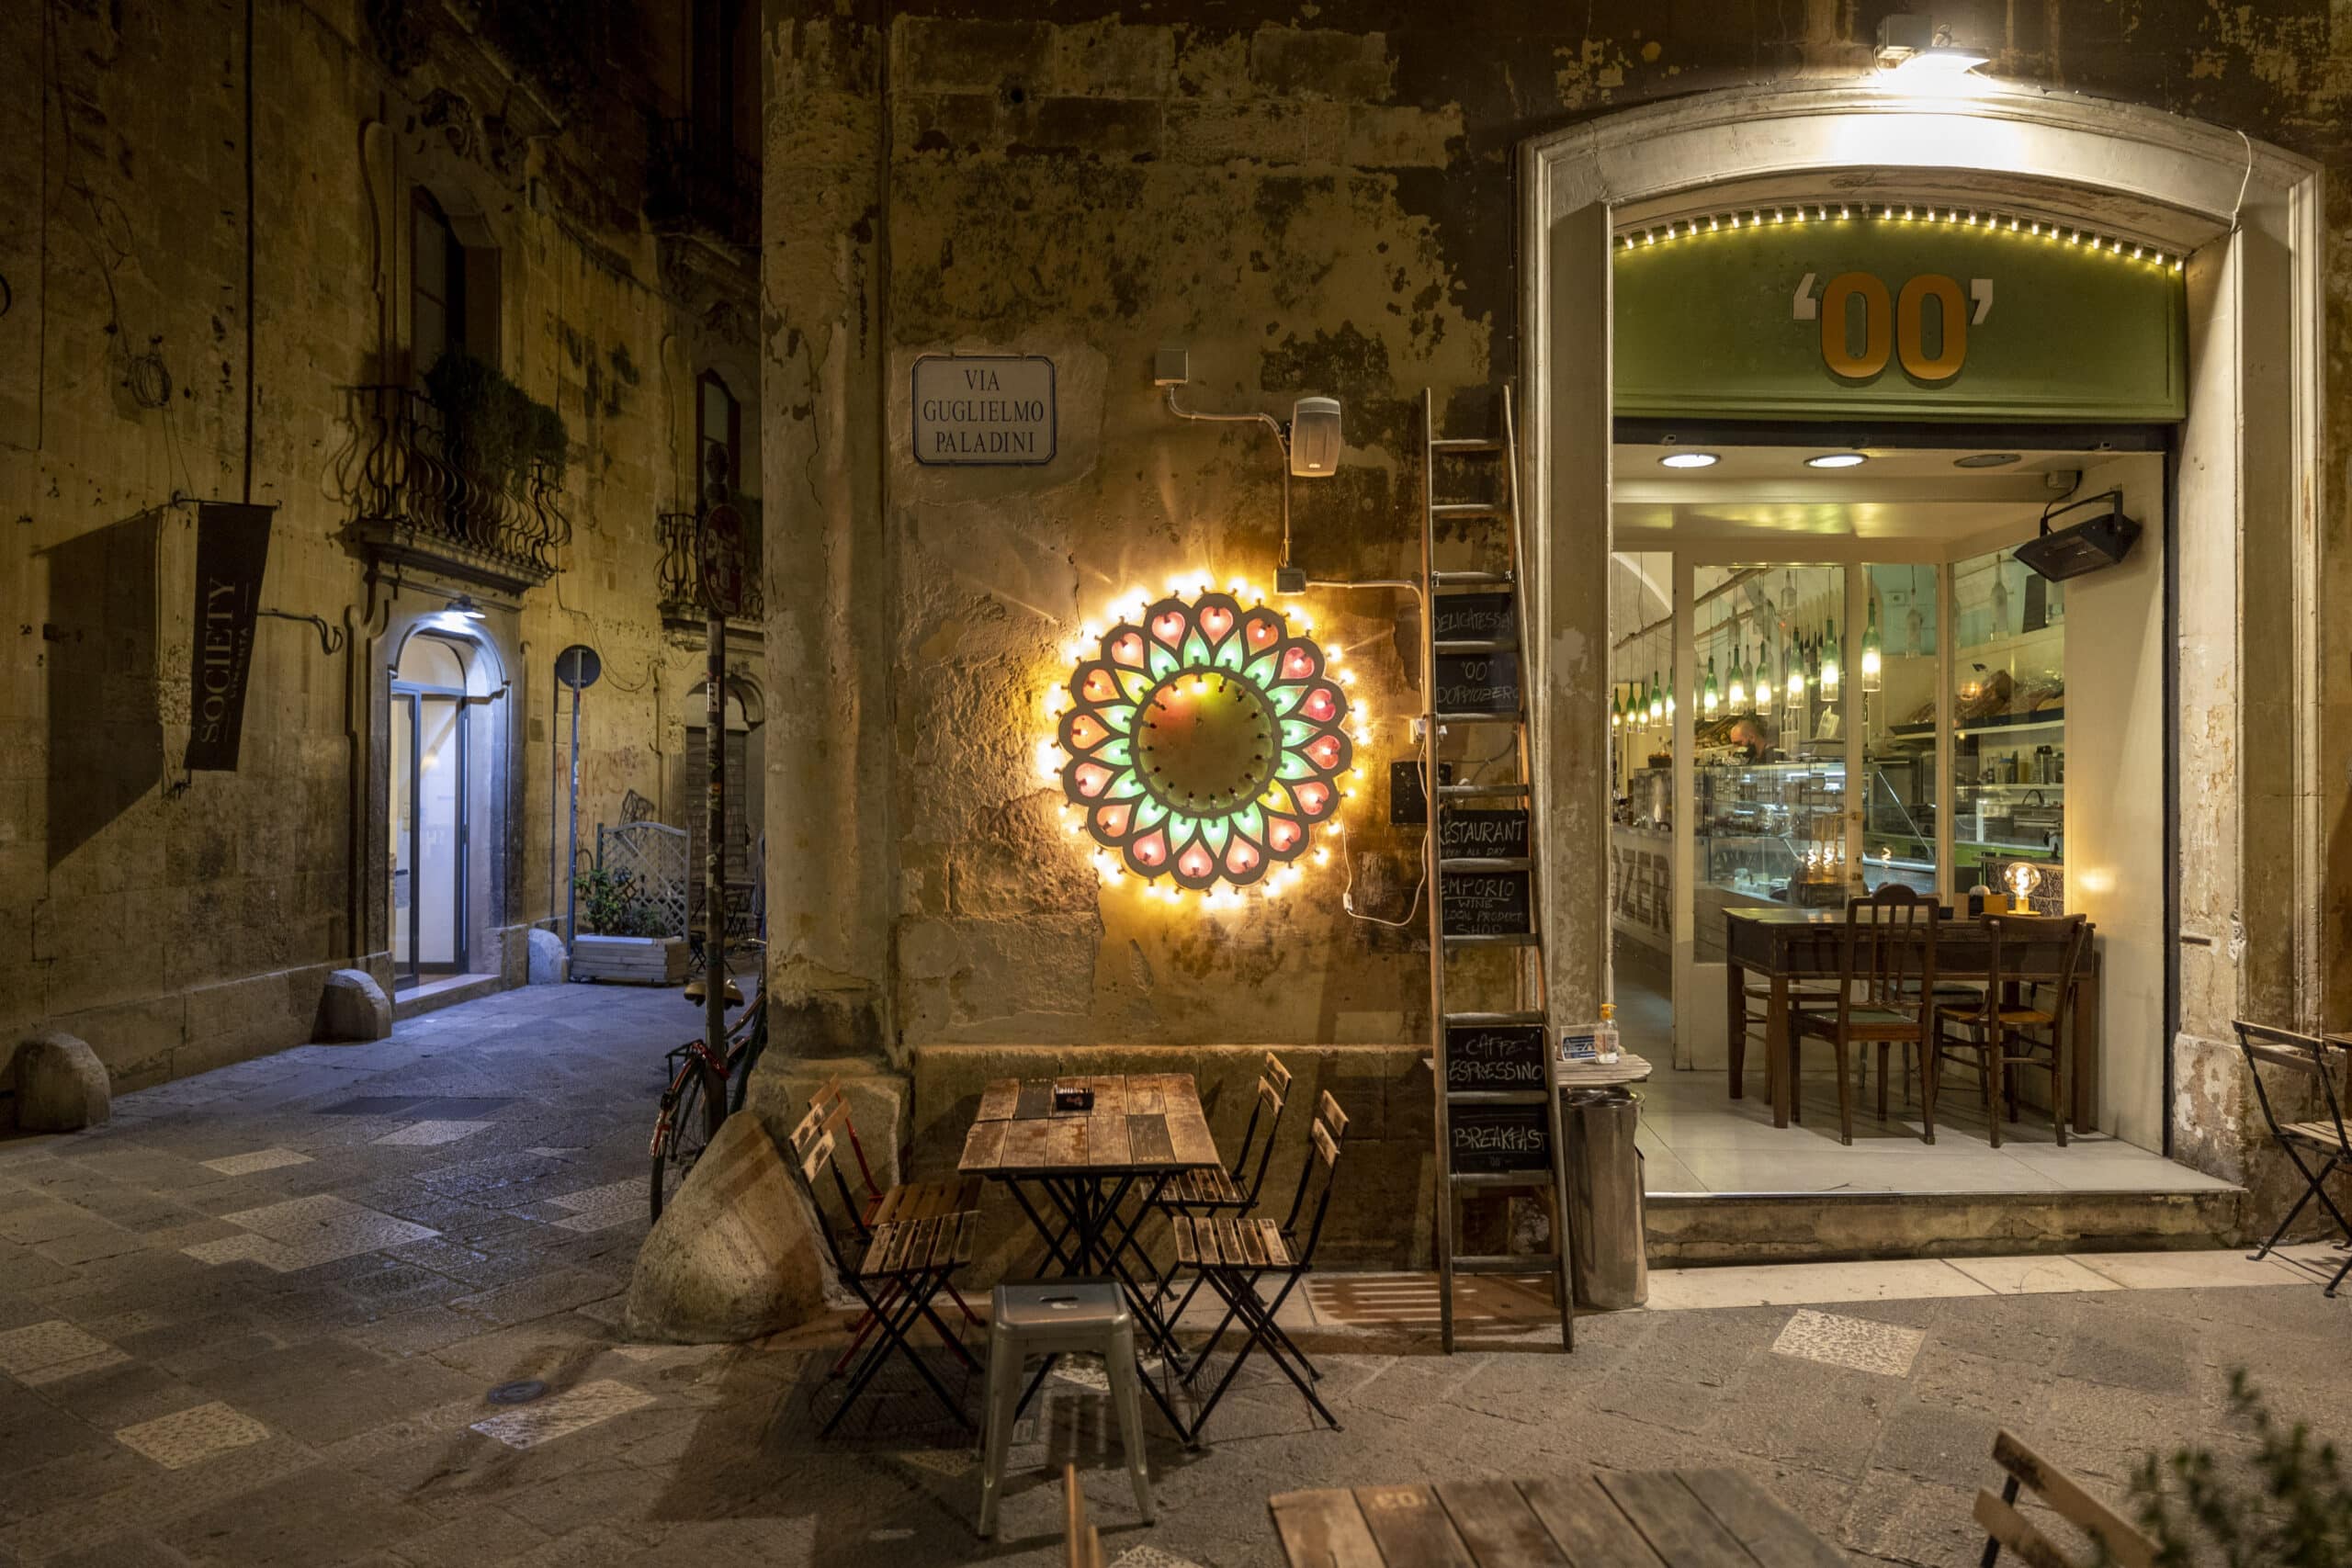 Bezaubernde Straßenansicht bei Nacht mit einem gemütlichen Café mit Sitzgelegenheiten im Freien, einem hellen runden Neonschild und alten strukturierten Gebäudewänden in einer europäischen Gasse. © Fotografie Tomas Rodriguez